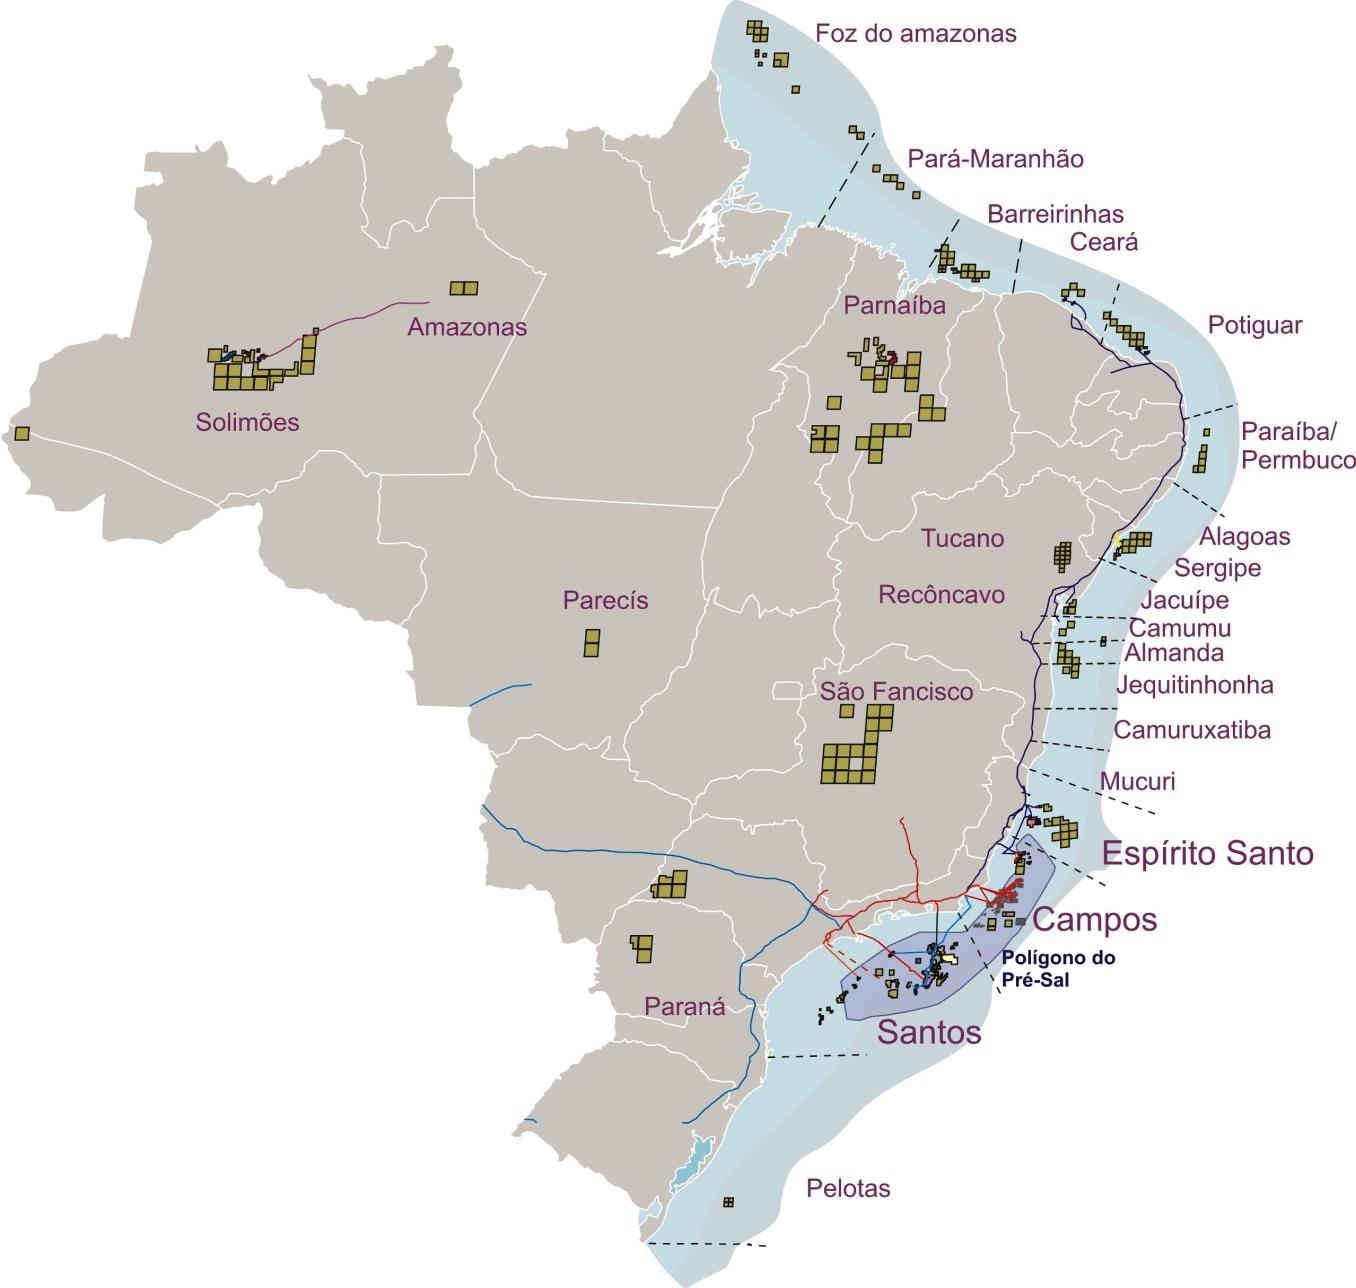 Sergipe (SE) Planejado 2020 Capacidade: 14 MMm³/d Gasoduto Bolívia-Brasil (Gasbol) Existentes Planejados Rio Grande